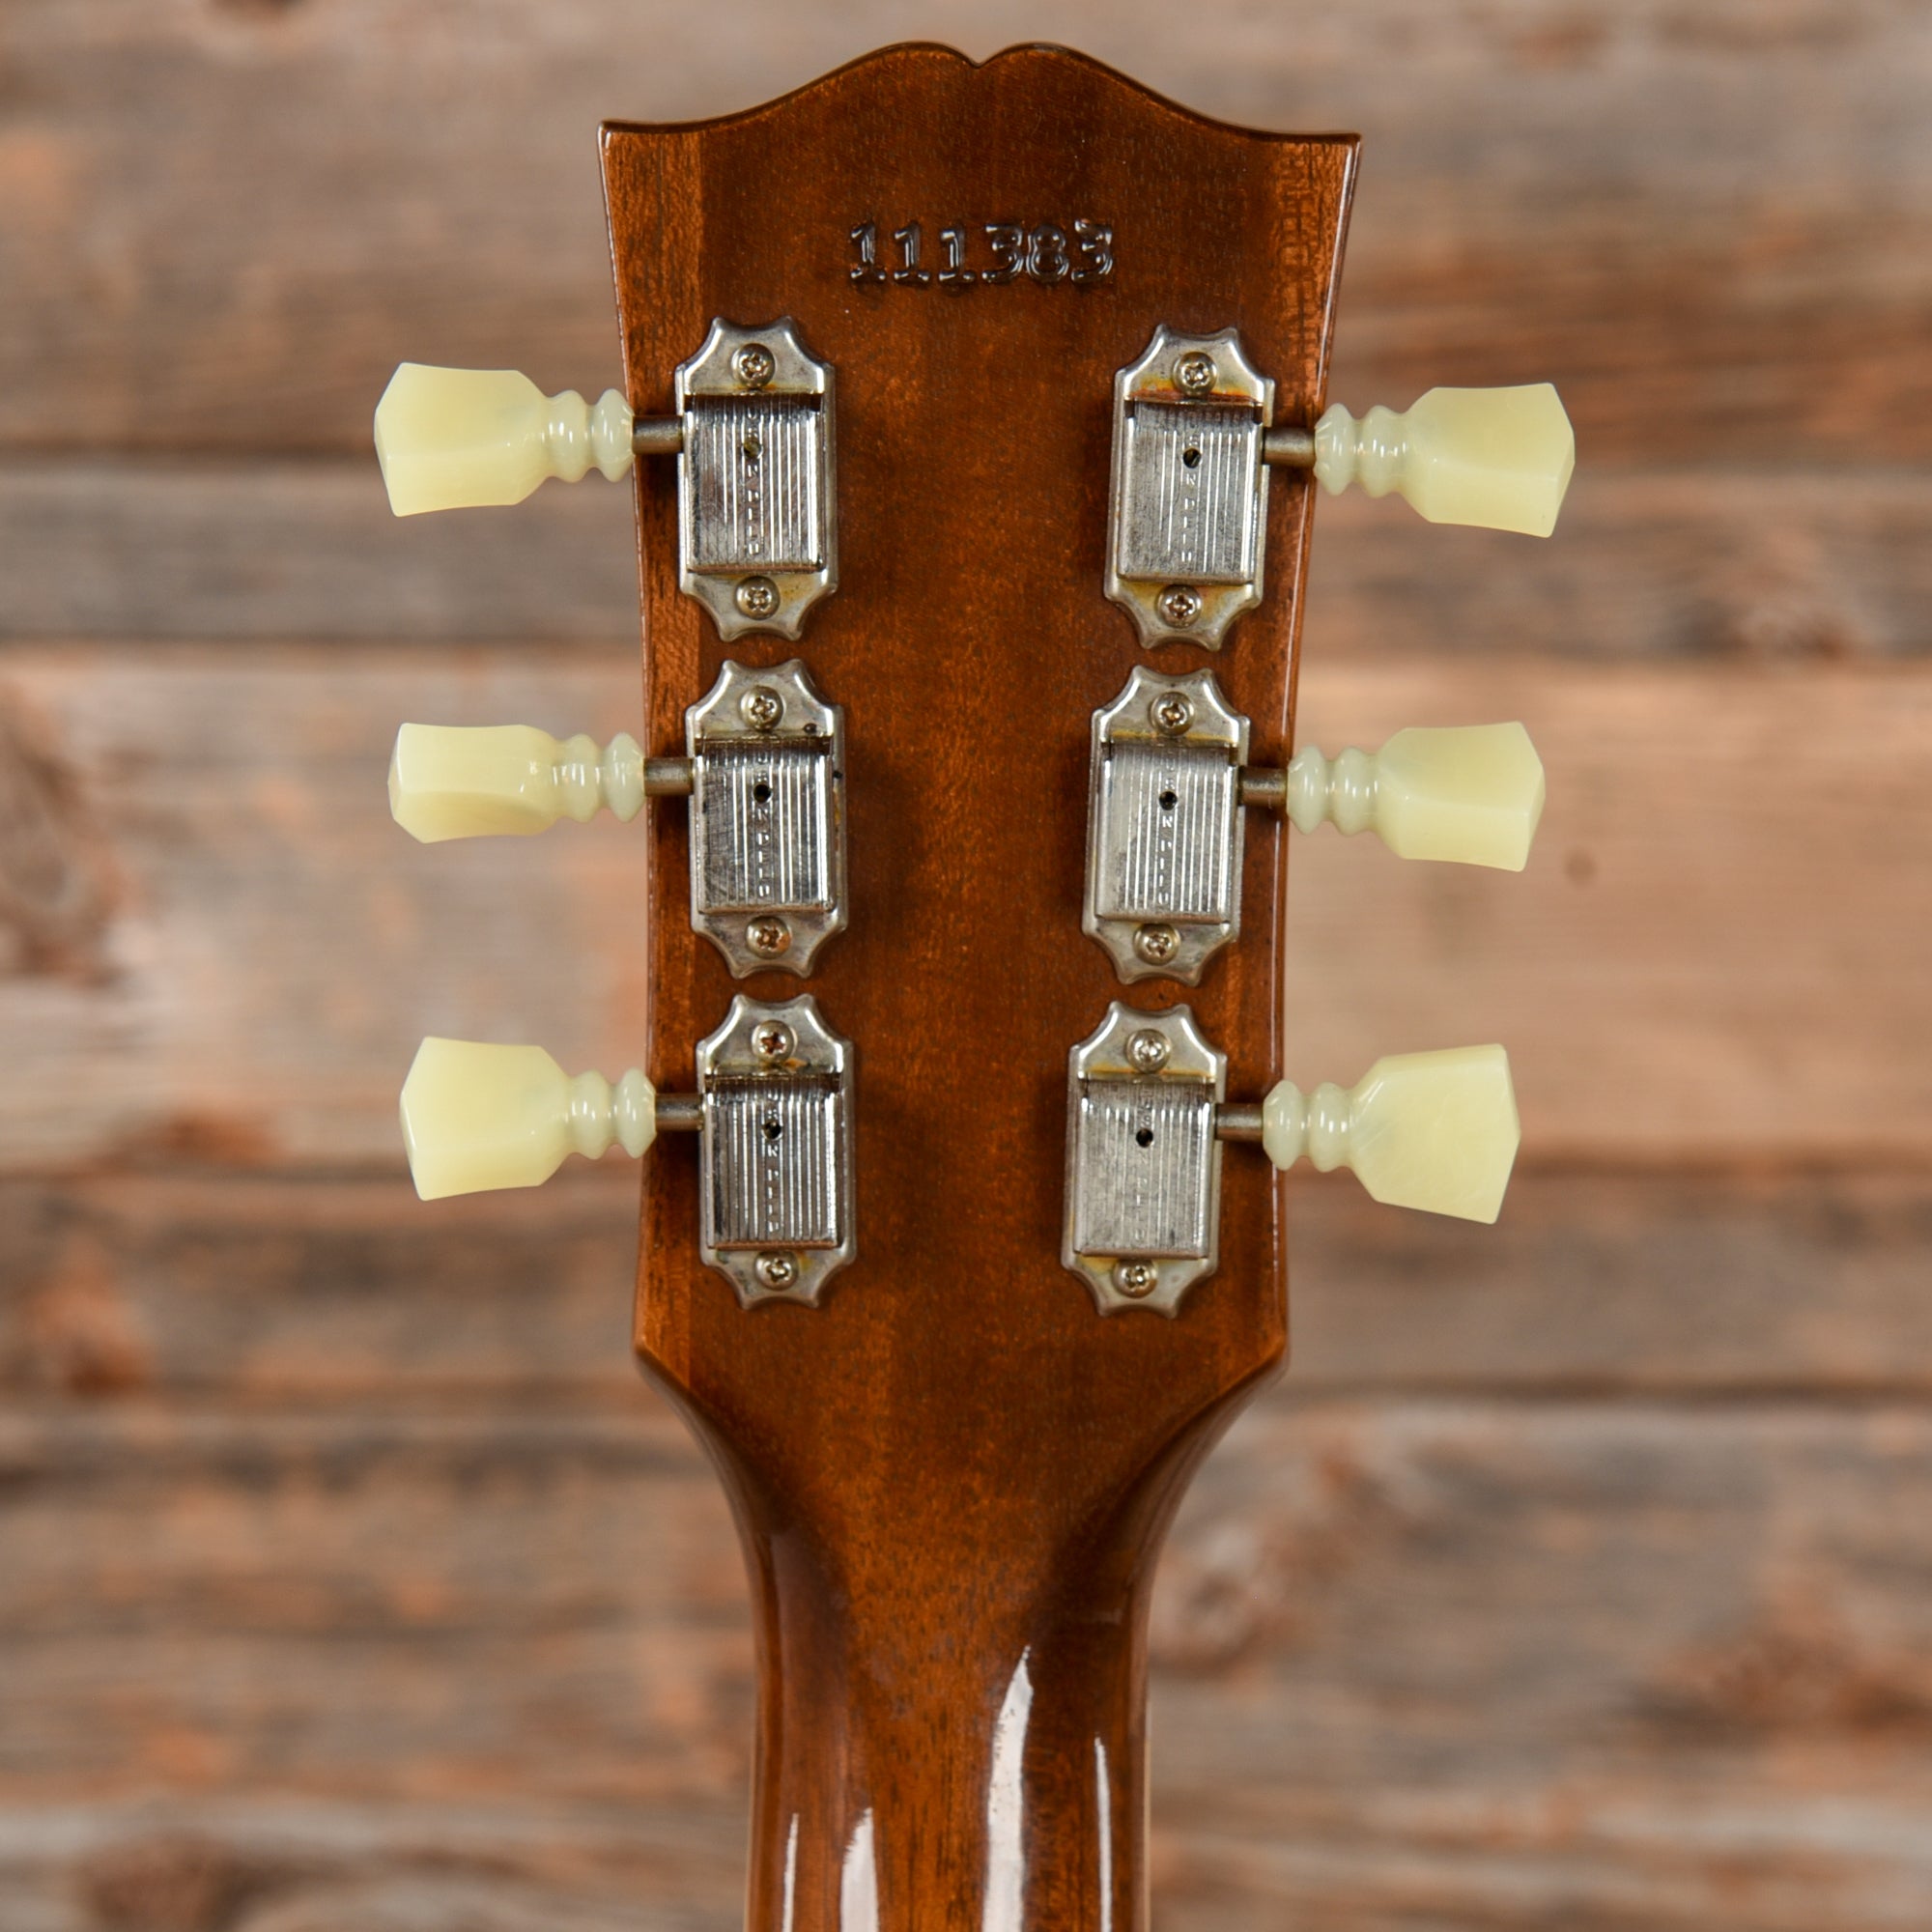 Gibson Custom 64 ES-335 VOS Vintage Sunburst 2021